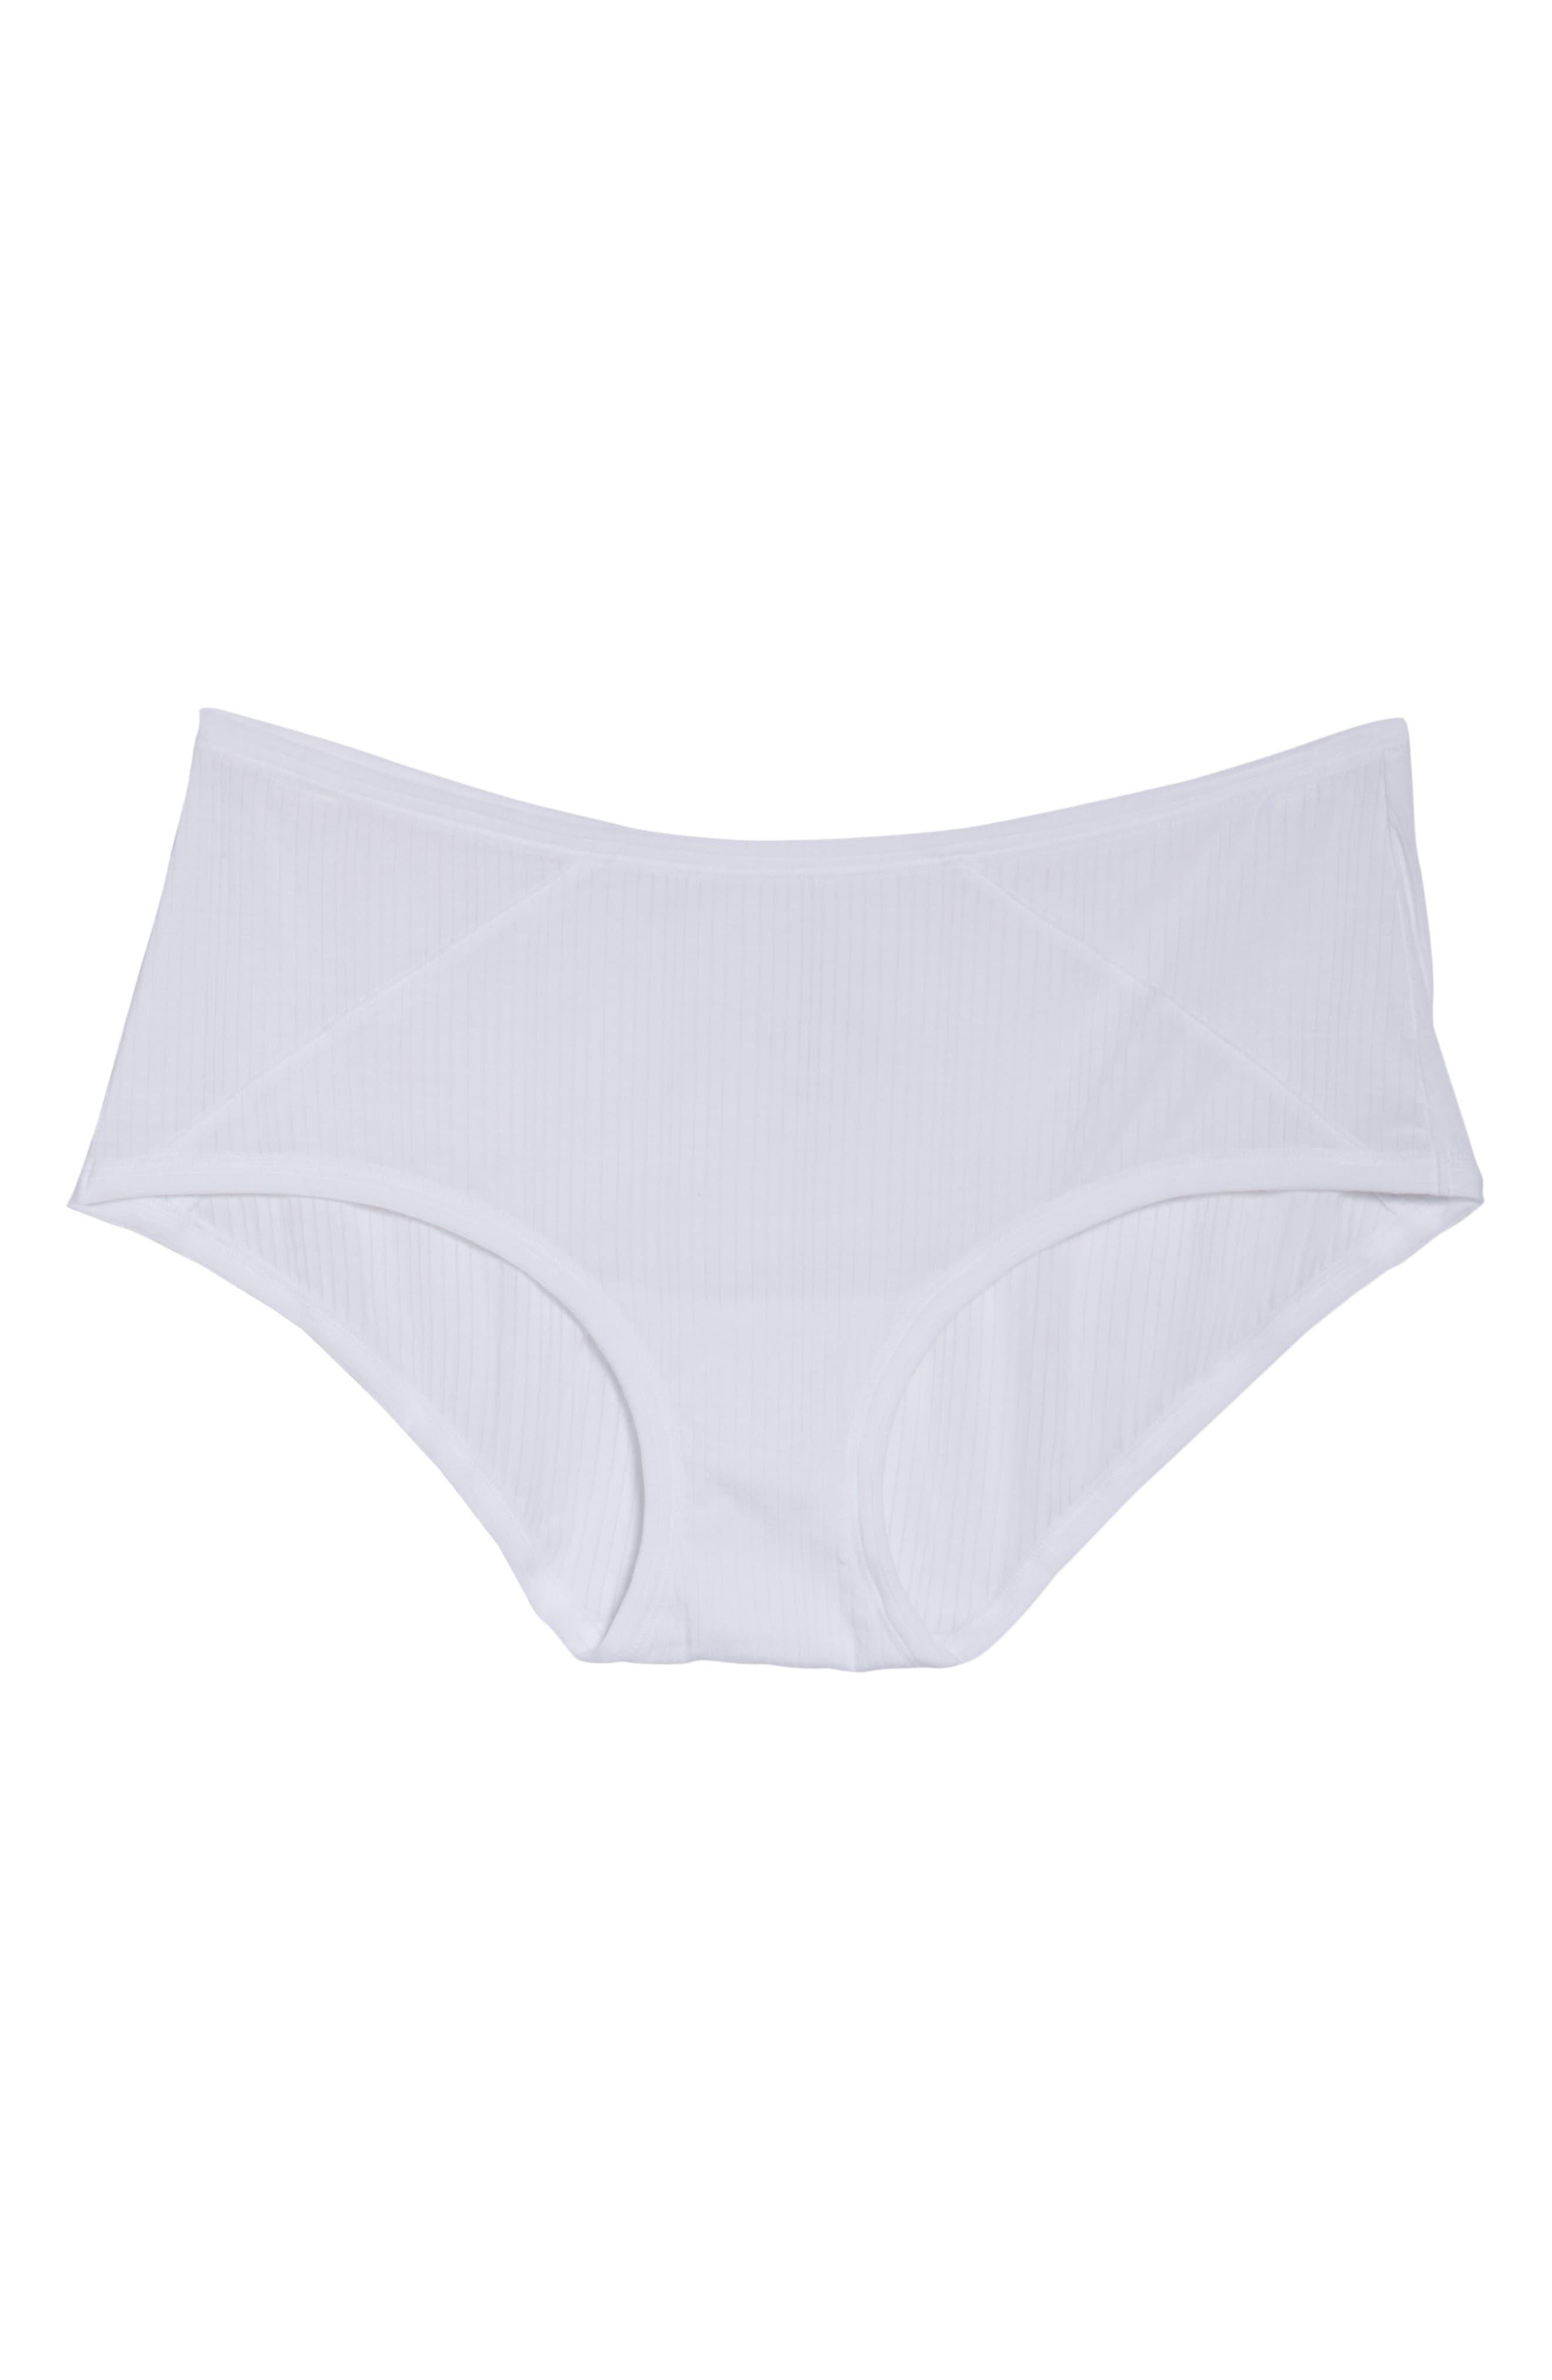 Whipped Long Underwear in White  Women's White Leggings - Negative –  Negative Underwear